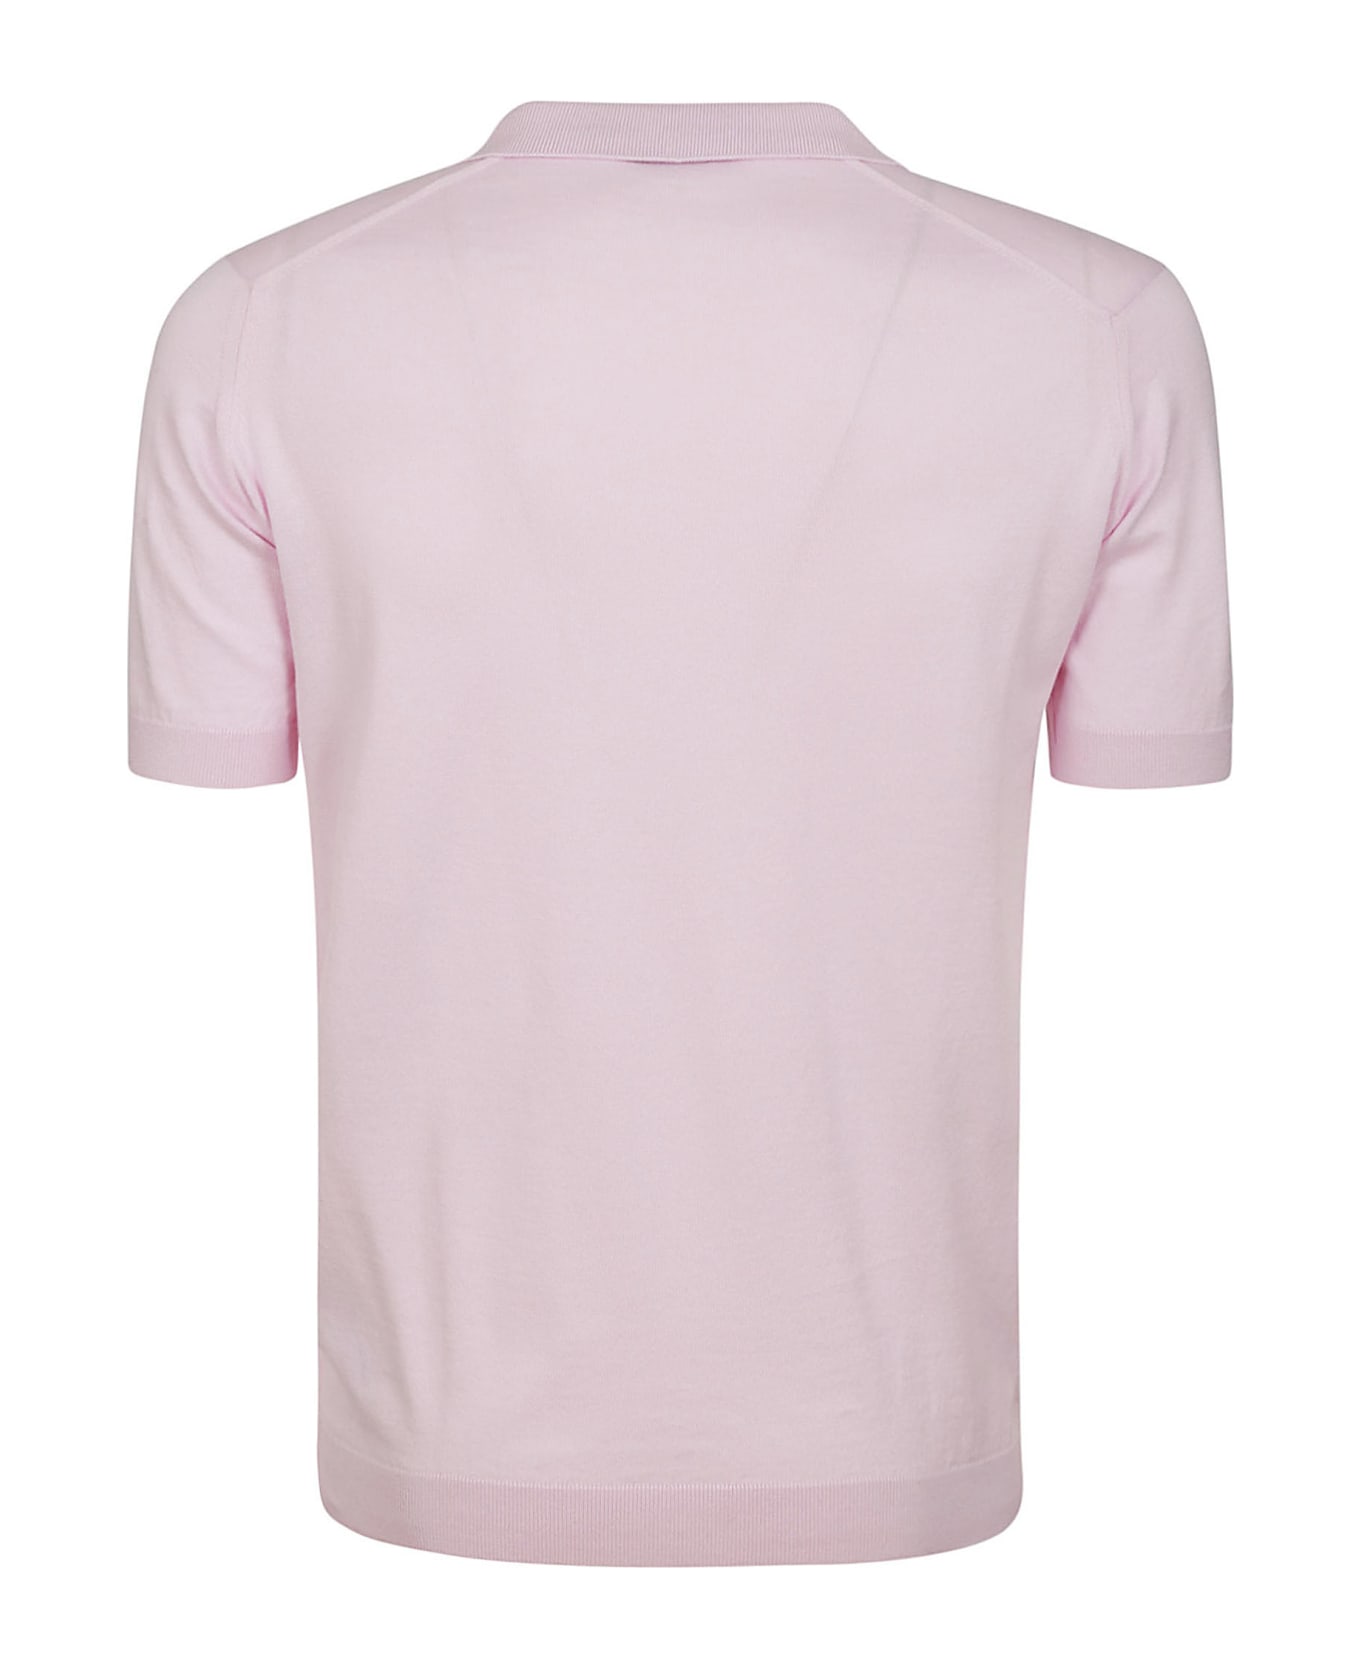 John Smedley Noah Skipper Collar Shirt Ss - Mallow Pink